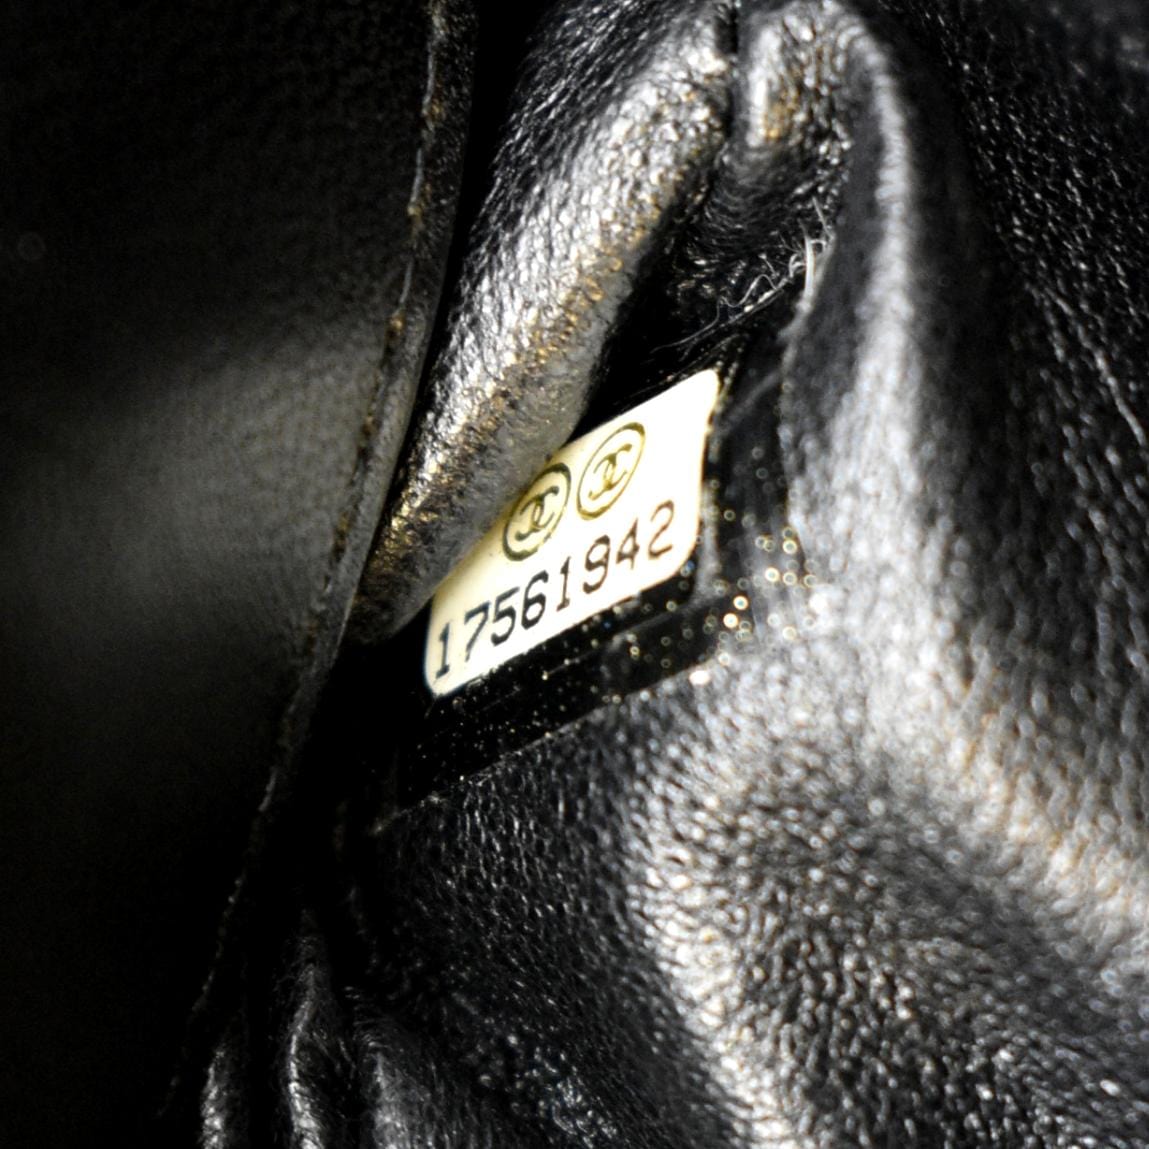 Chanel CC Medium Flap Transparent Bag